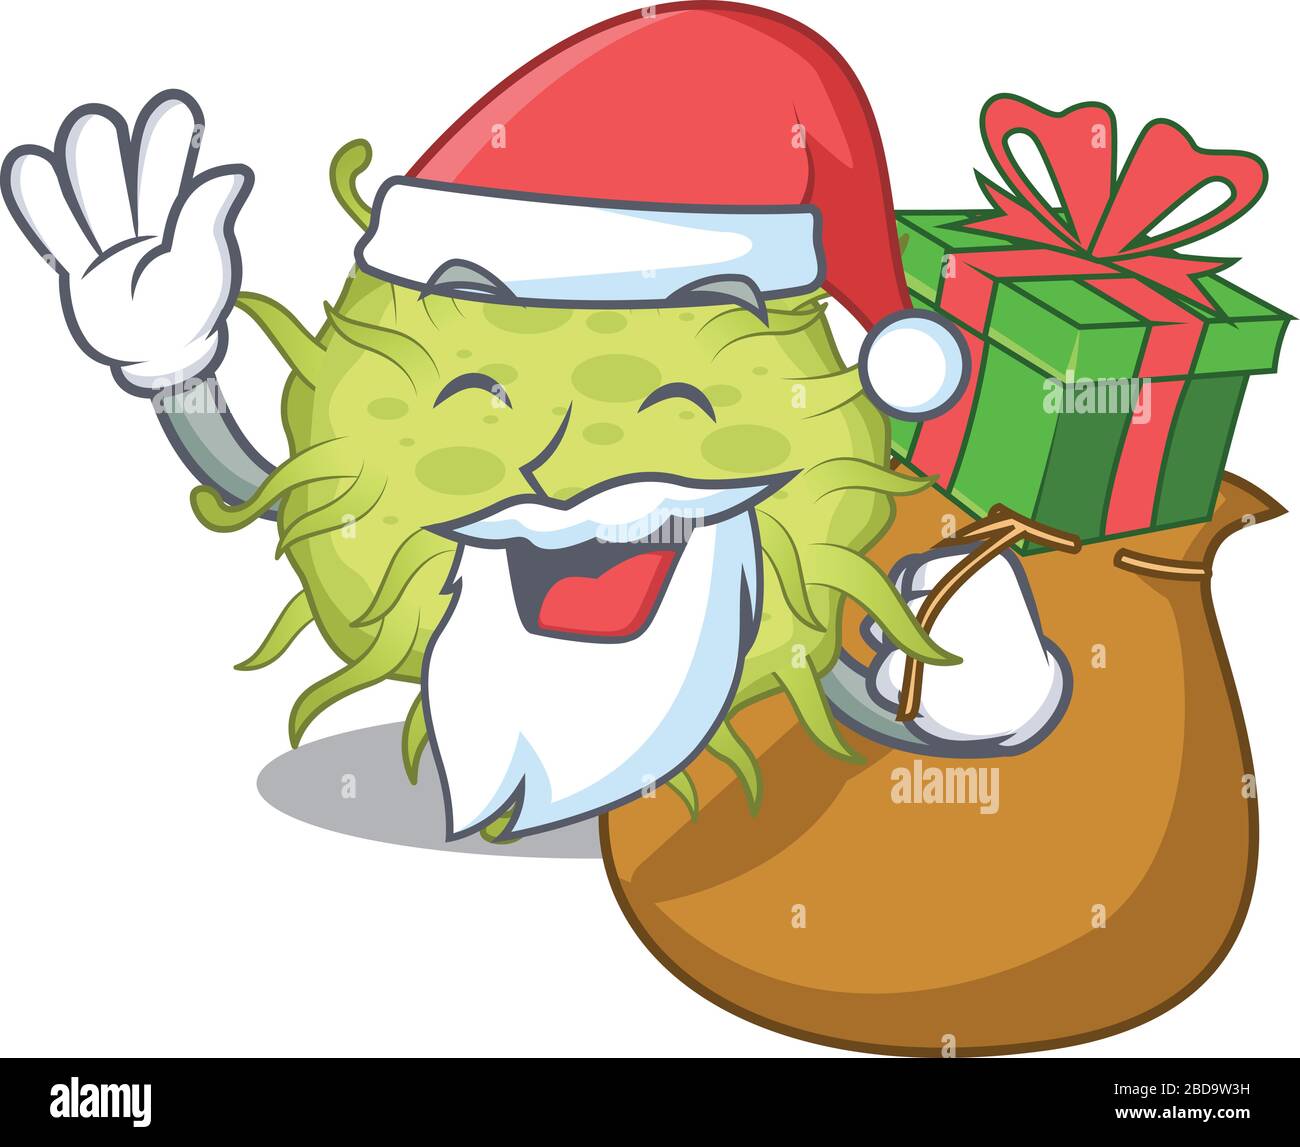 Dessin animé de bactéries coccus Santa avec cadeau de Noël Illustration de Vecteur